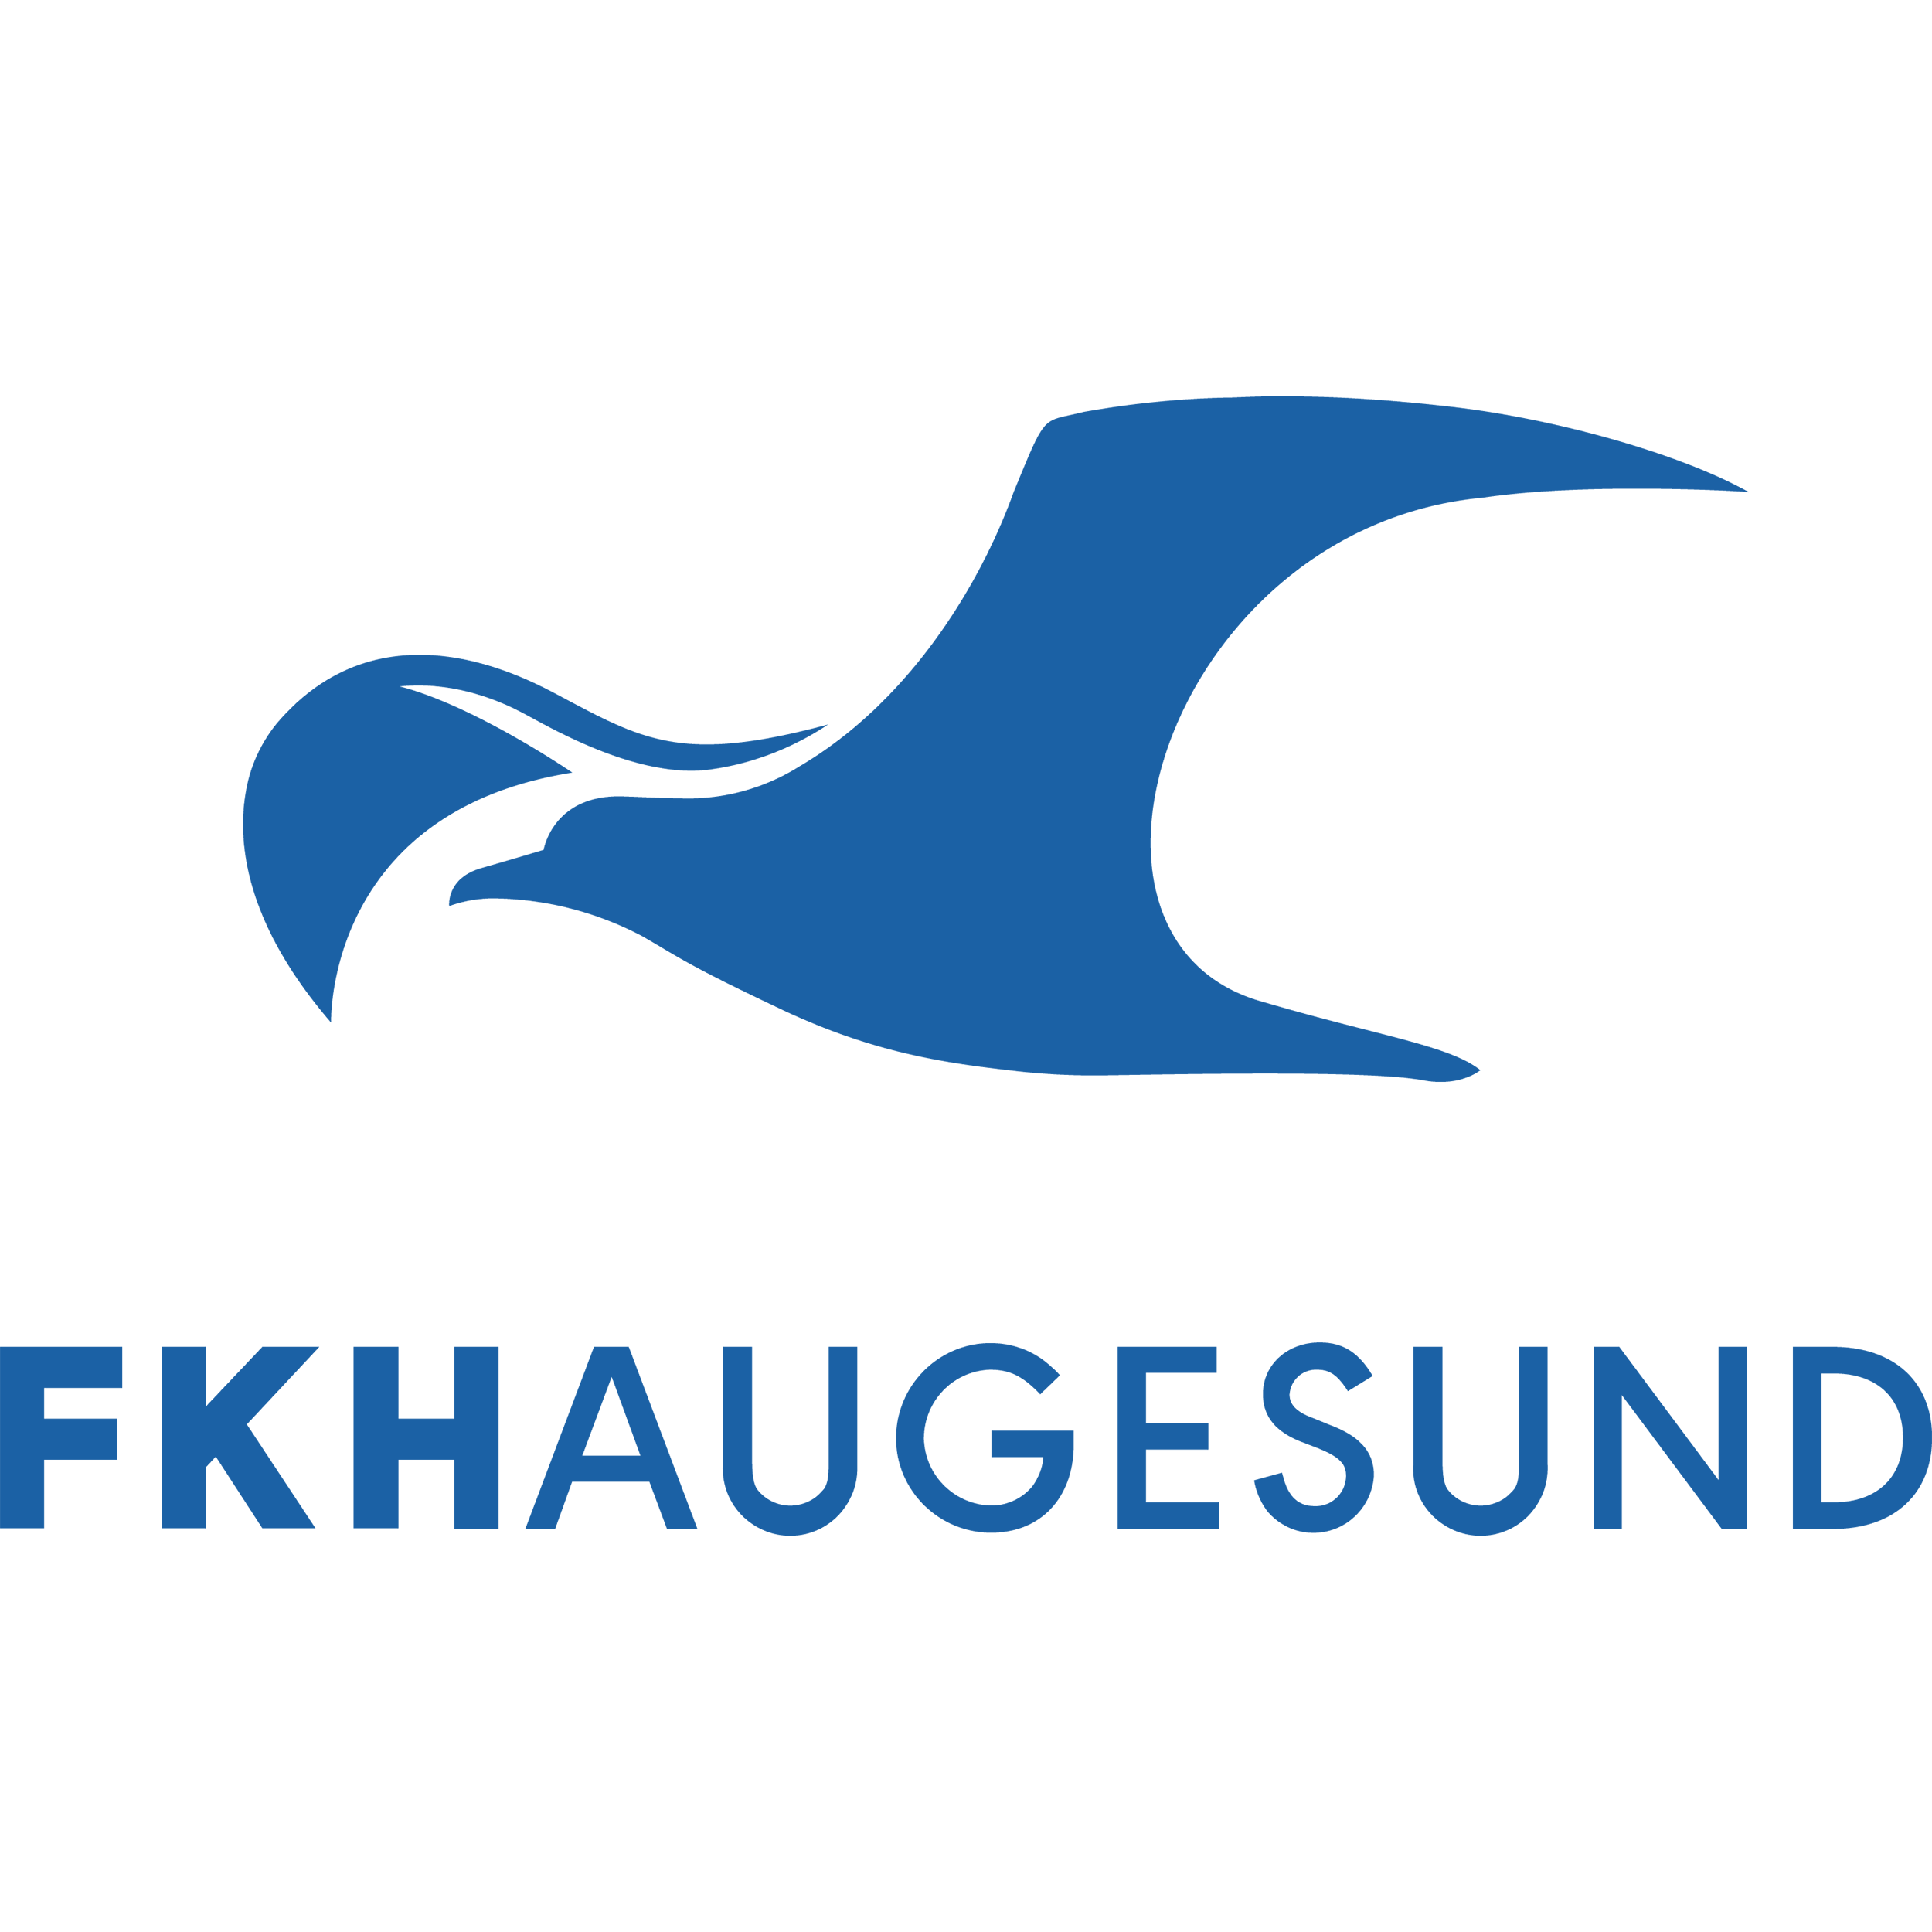 FK Haugesund